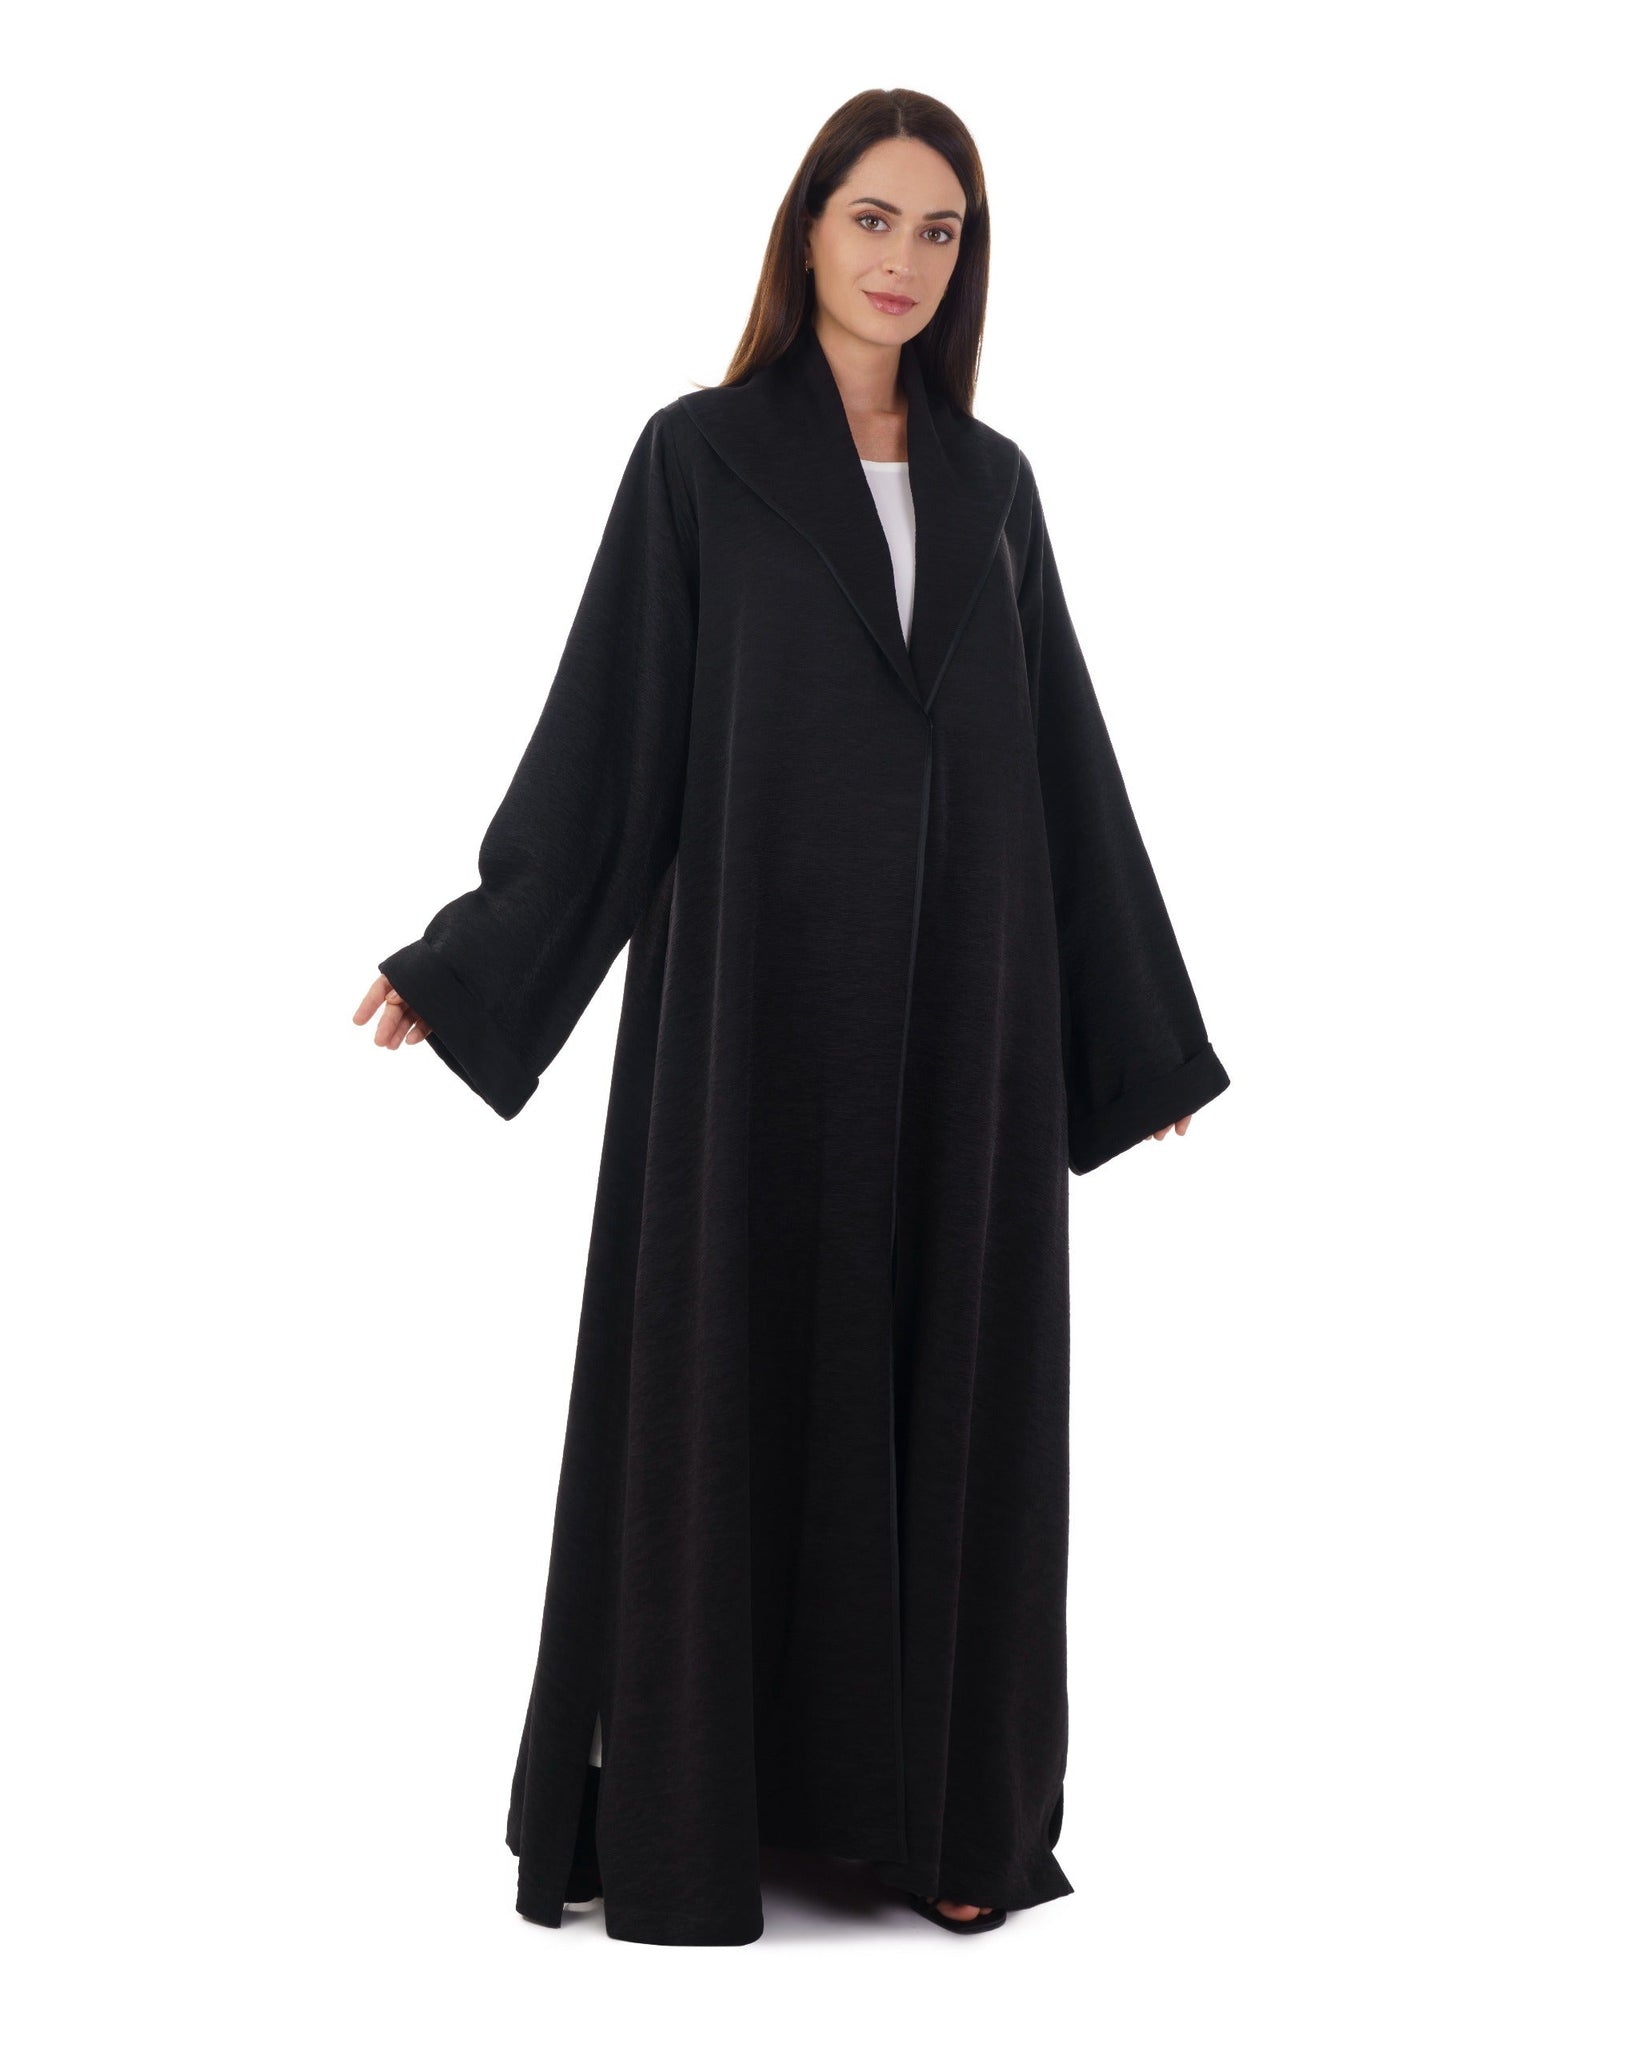 Hanayen Modern Saudi Jacket Abaya